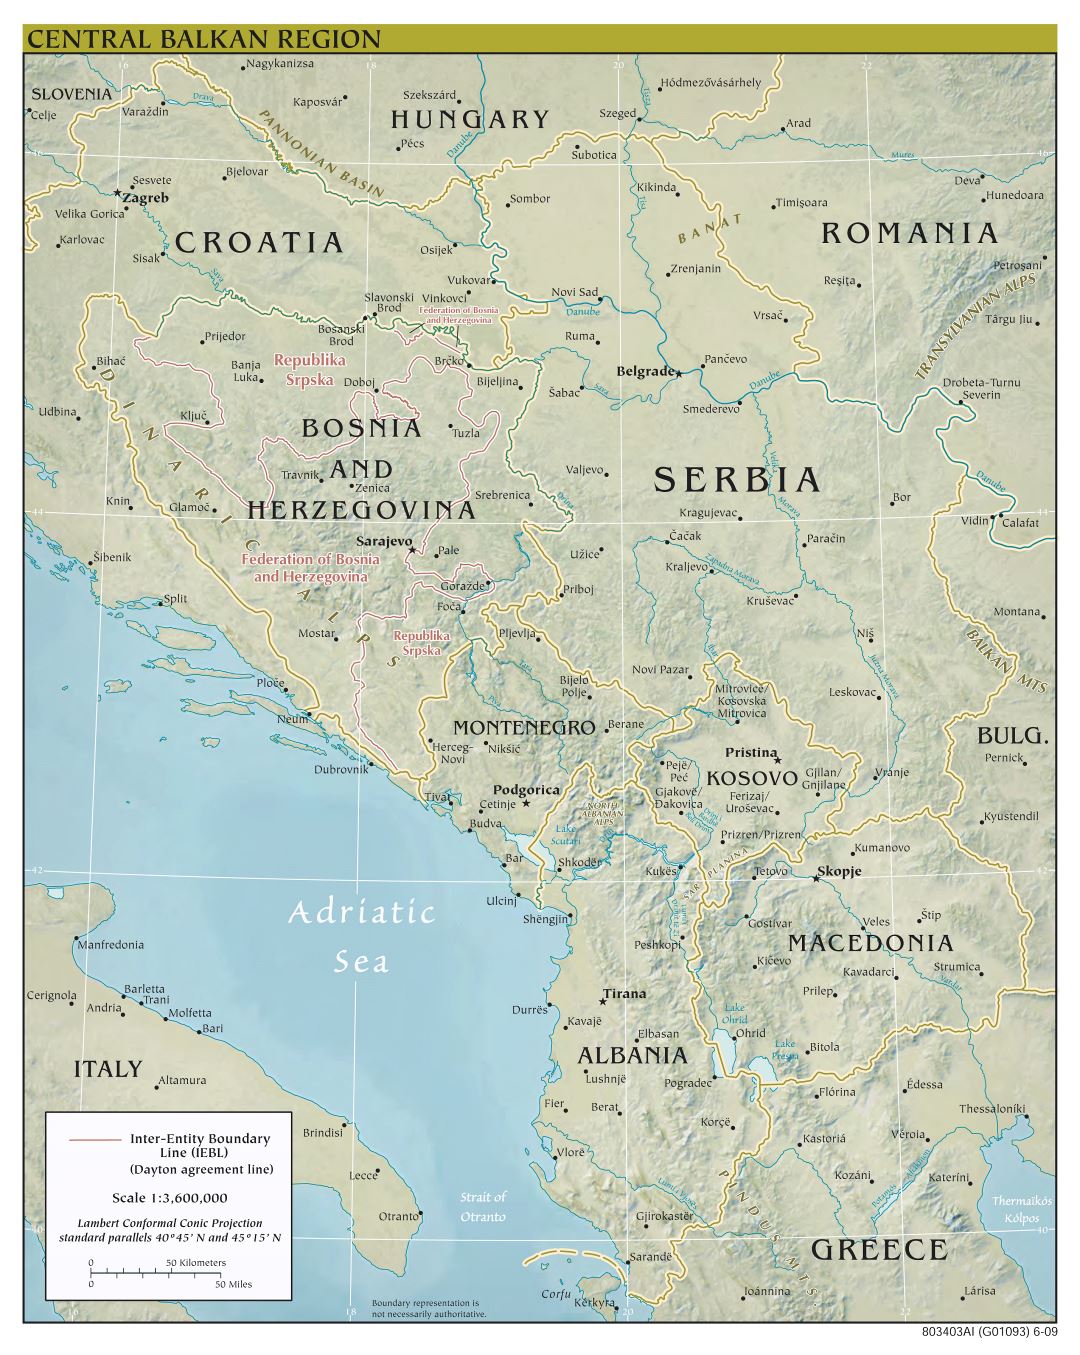 Mapa a gran escala política de la región central de los Balcanes con alivio, las carreteras principales y las principales ciudades - 2009